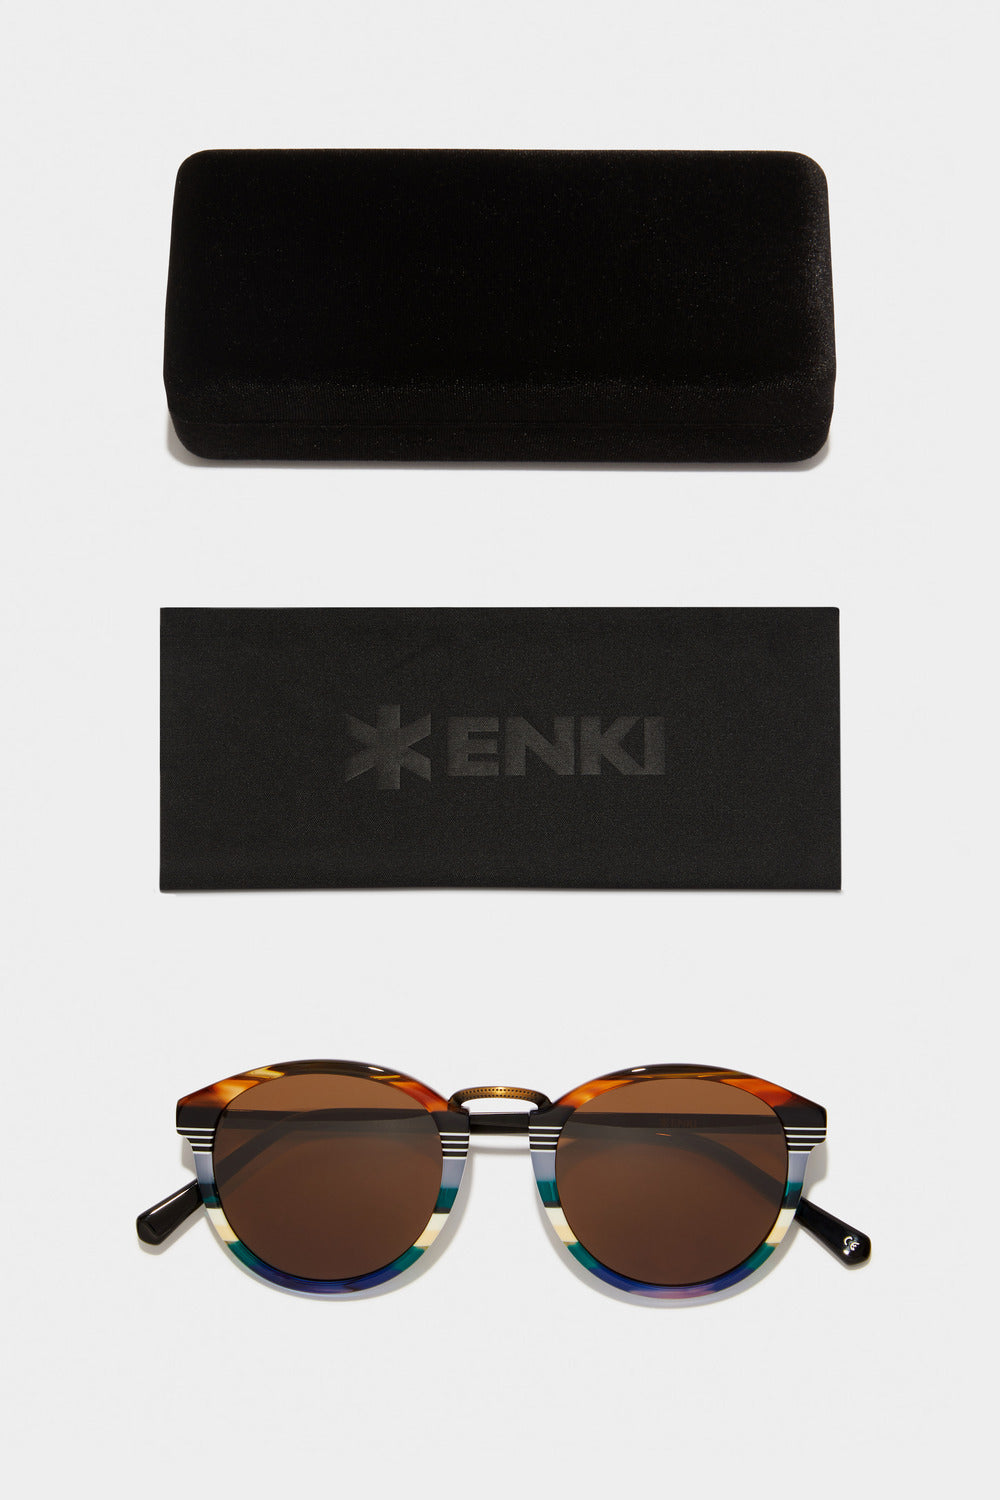 www.enkieyewear.com Janus Women’s Sunglasses